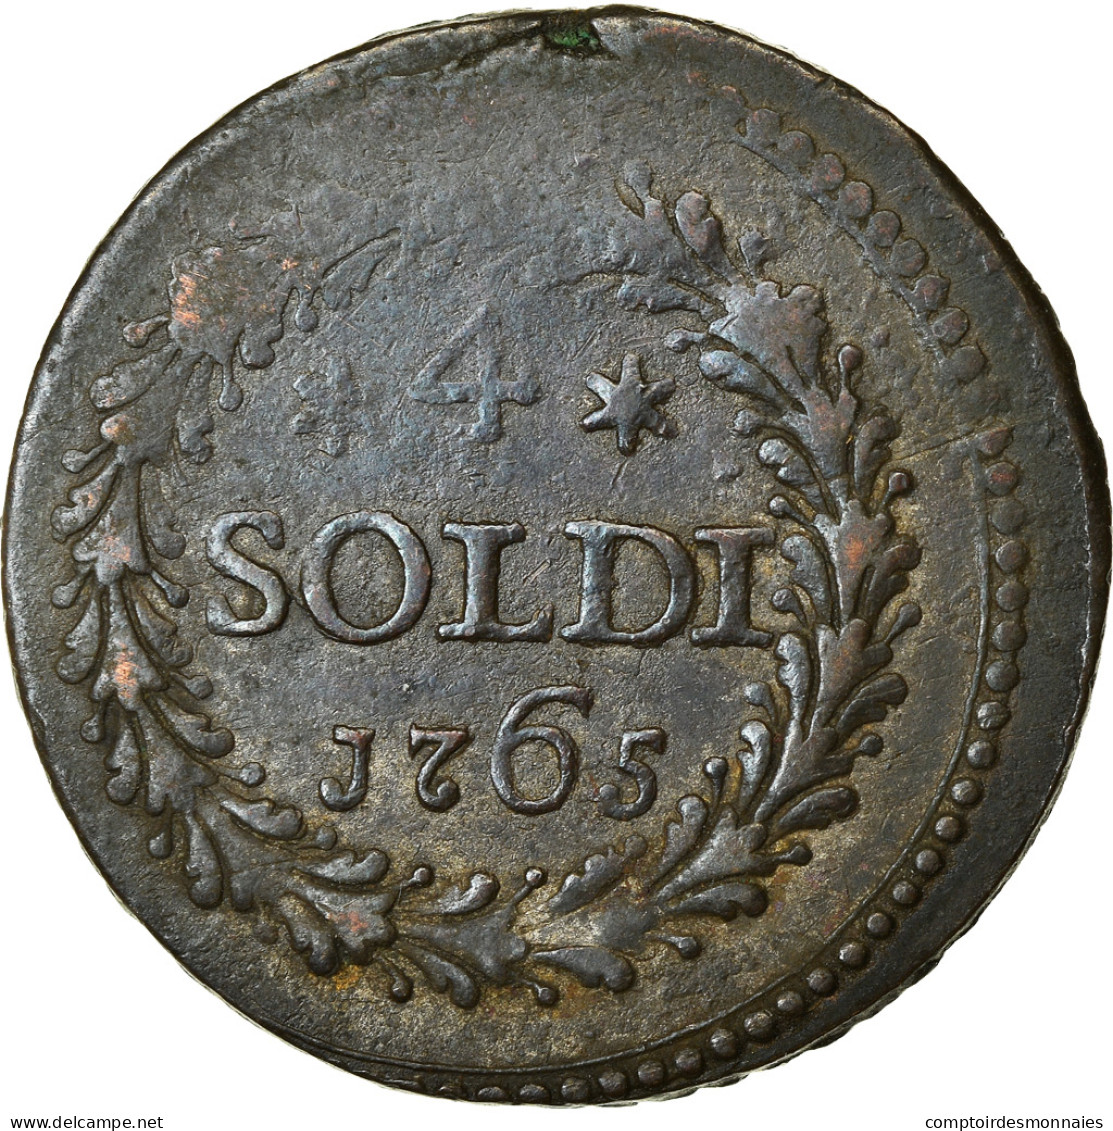 Monnaie, États Italiens, CORSICA, General Pasquale Paoli, 4 Soldi, 1765 - Corse (1736-1768)